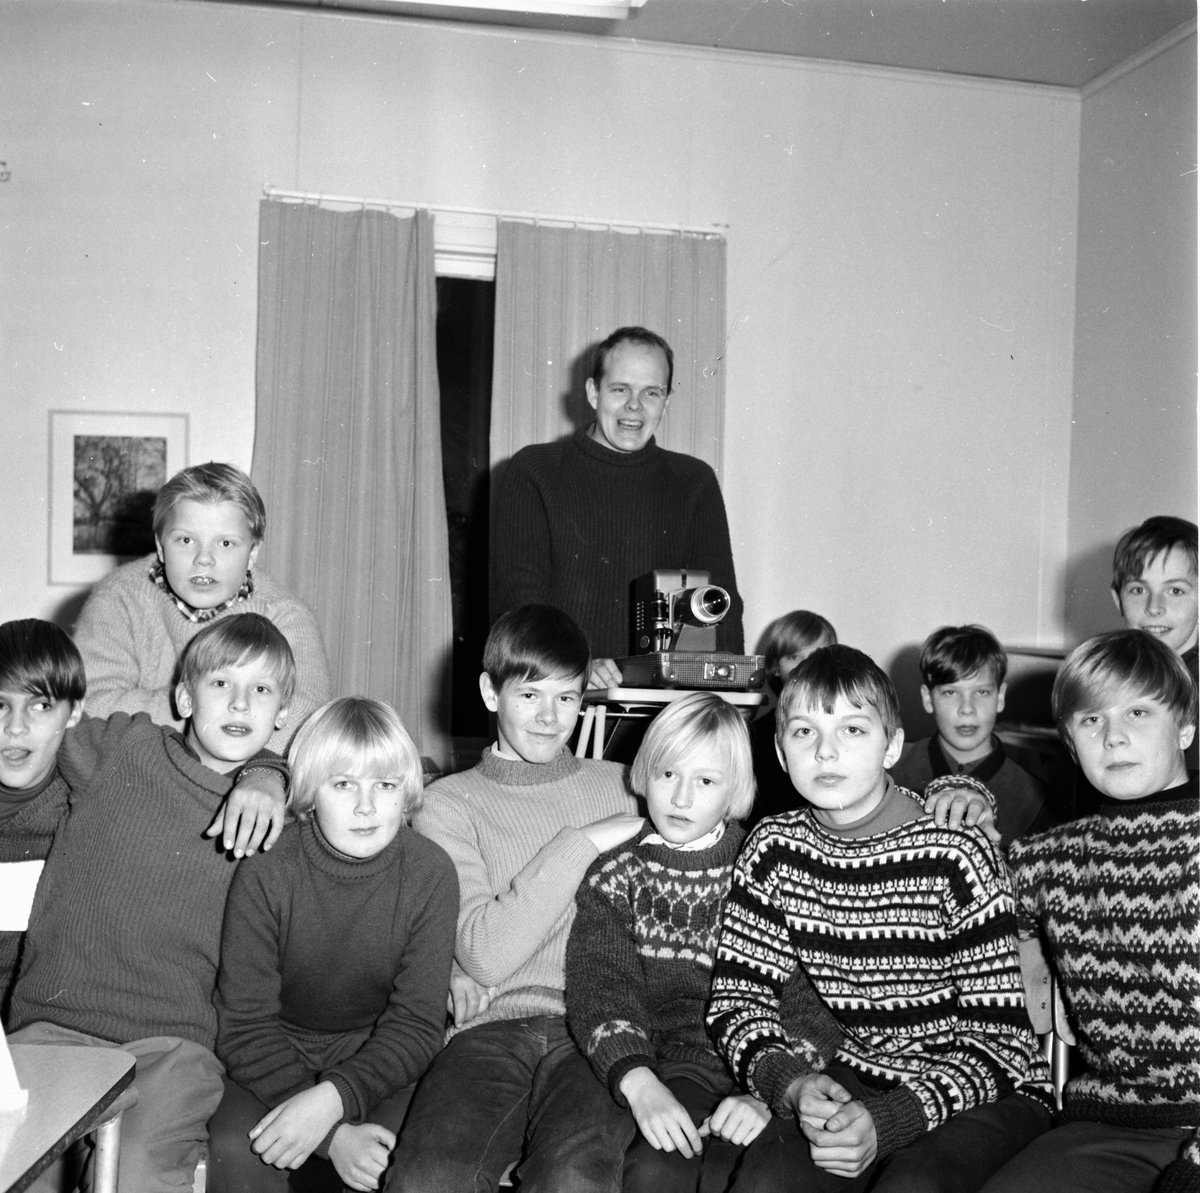 Paavola Risto, ungdomskonsulent i Bollnäs församling.
9/12-1965